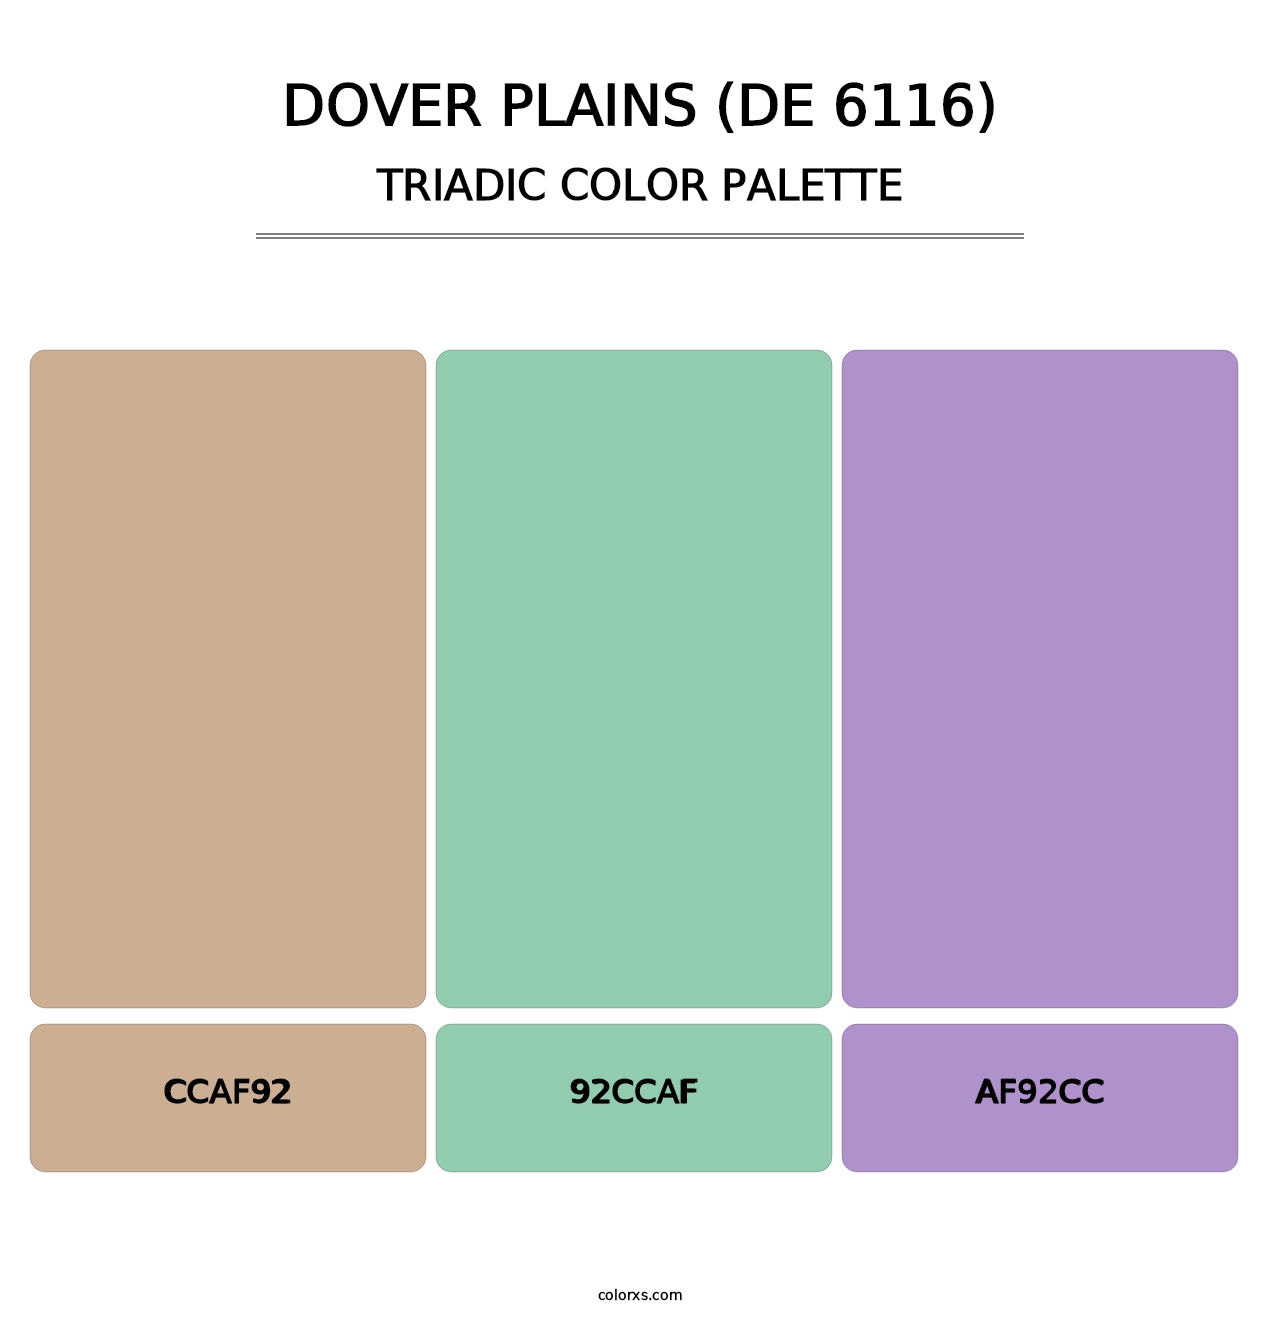 Dover Plains (DE 6116) - Triadic Color Palette